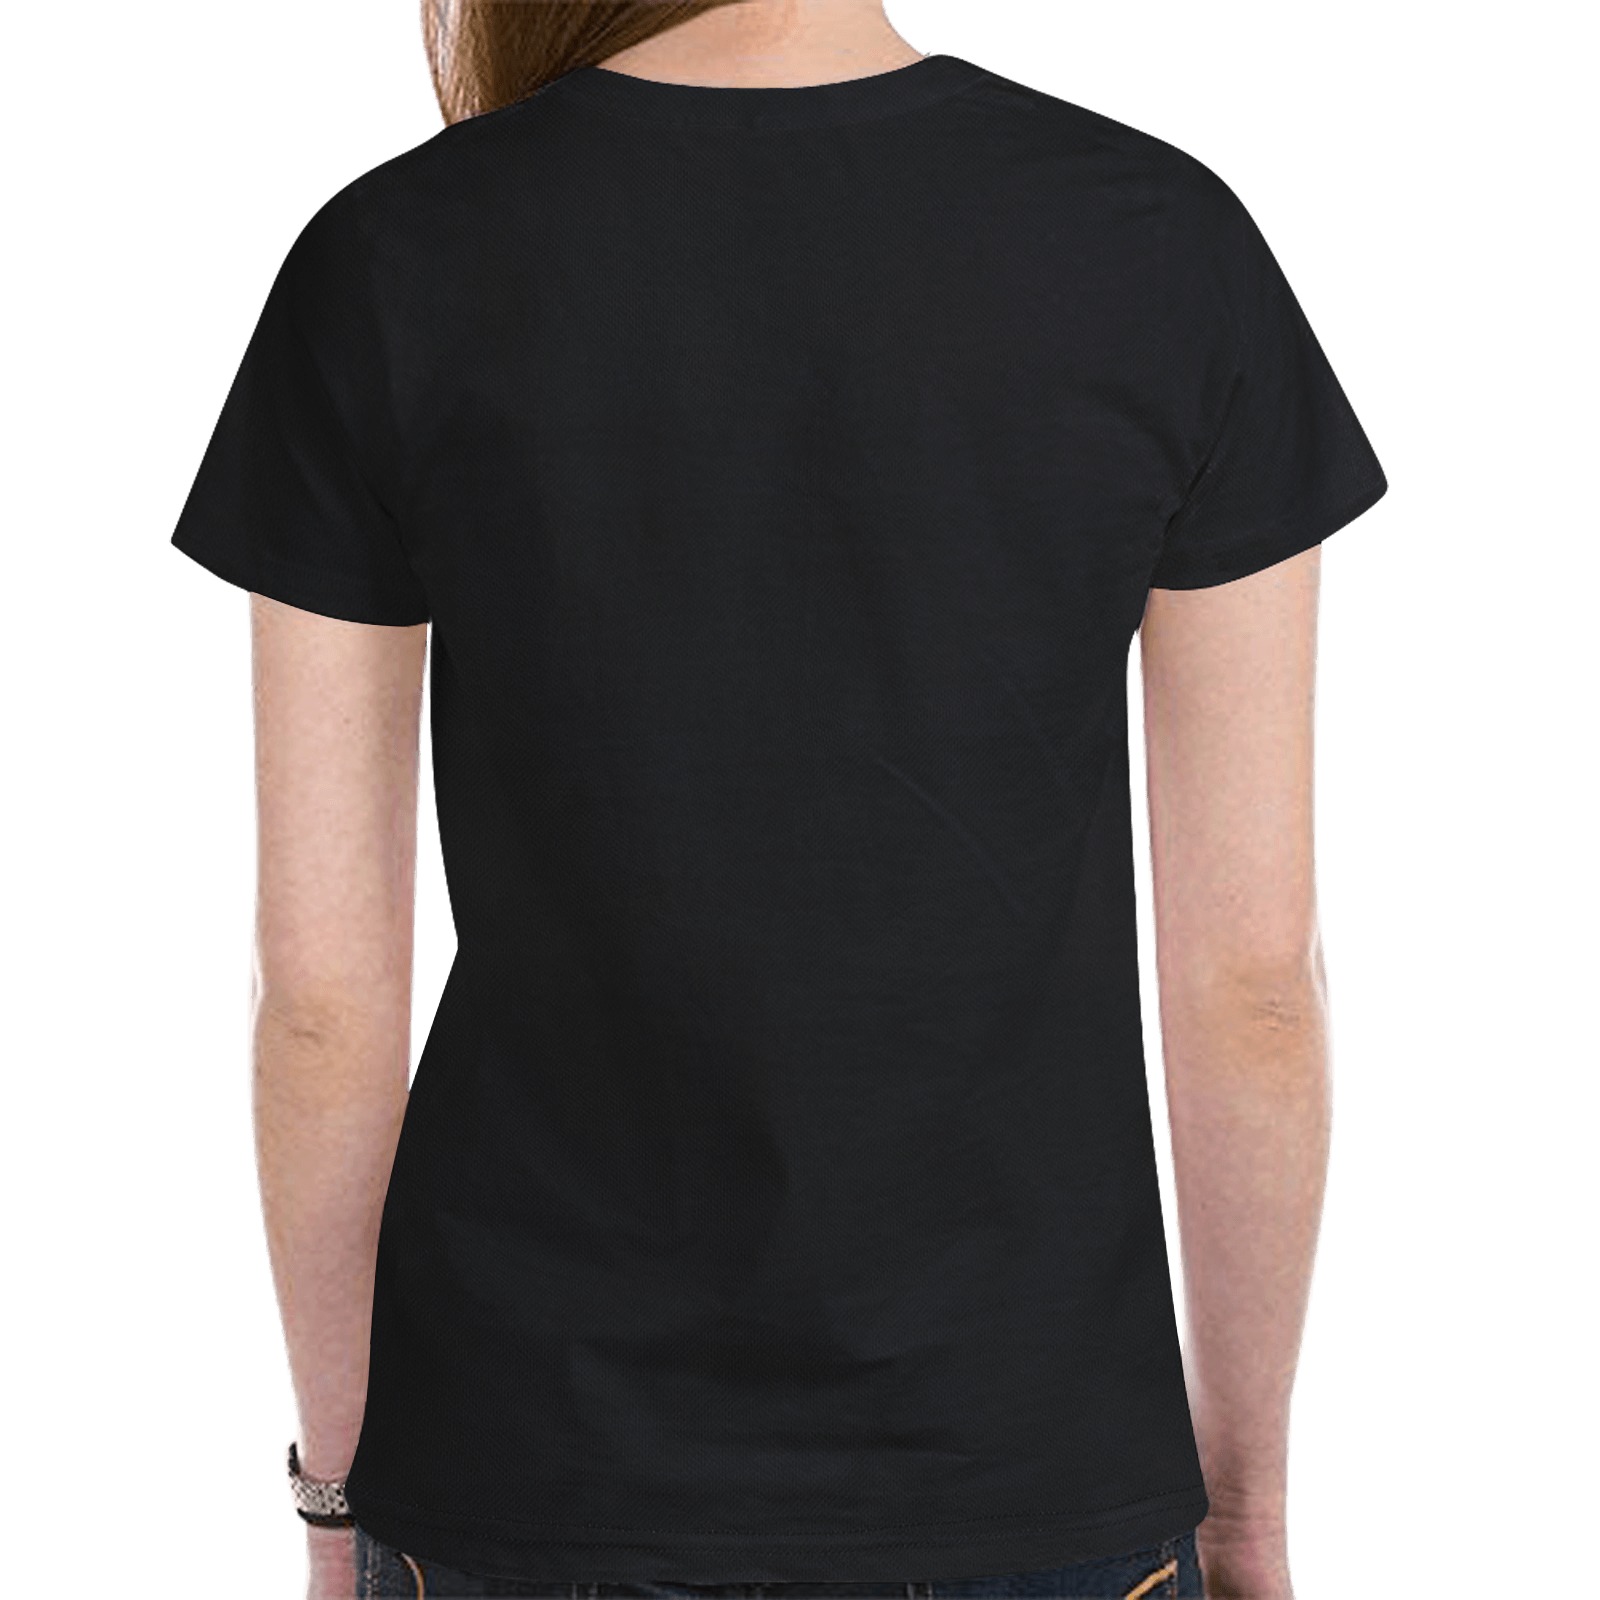 Aesthetic body design New All Over Print T-shirt for Women (Model T45)